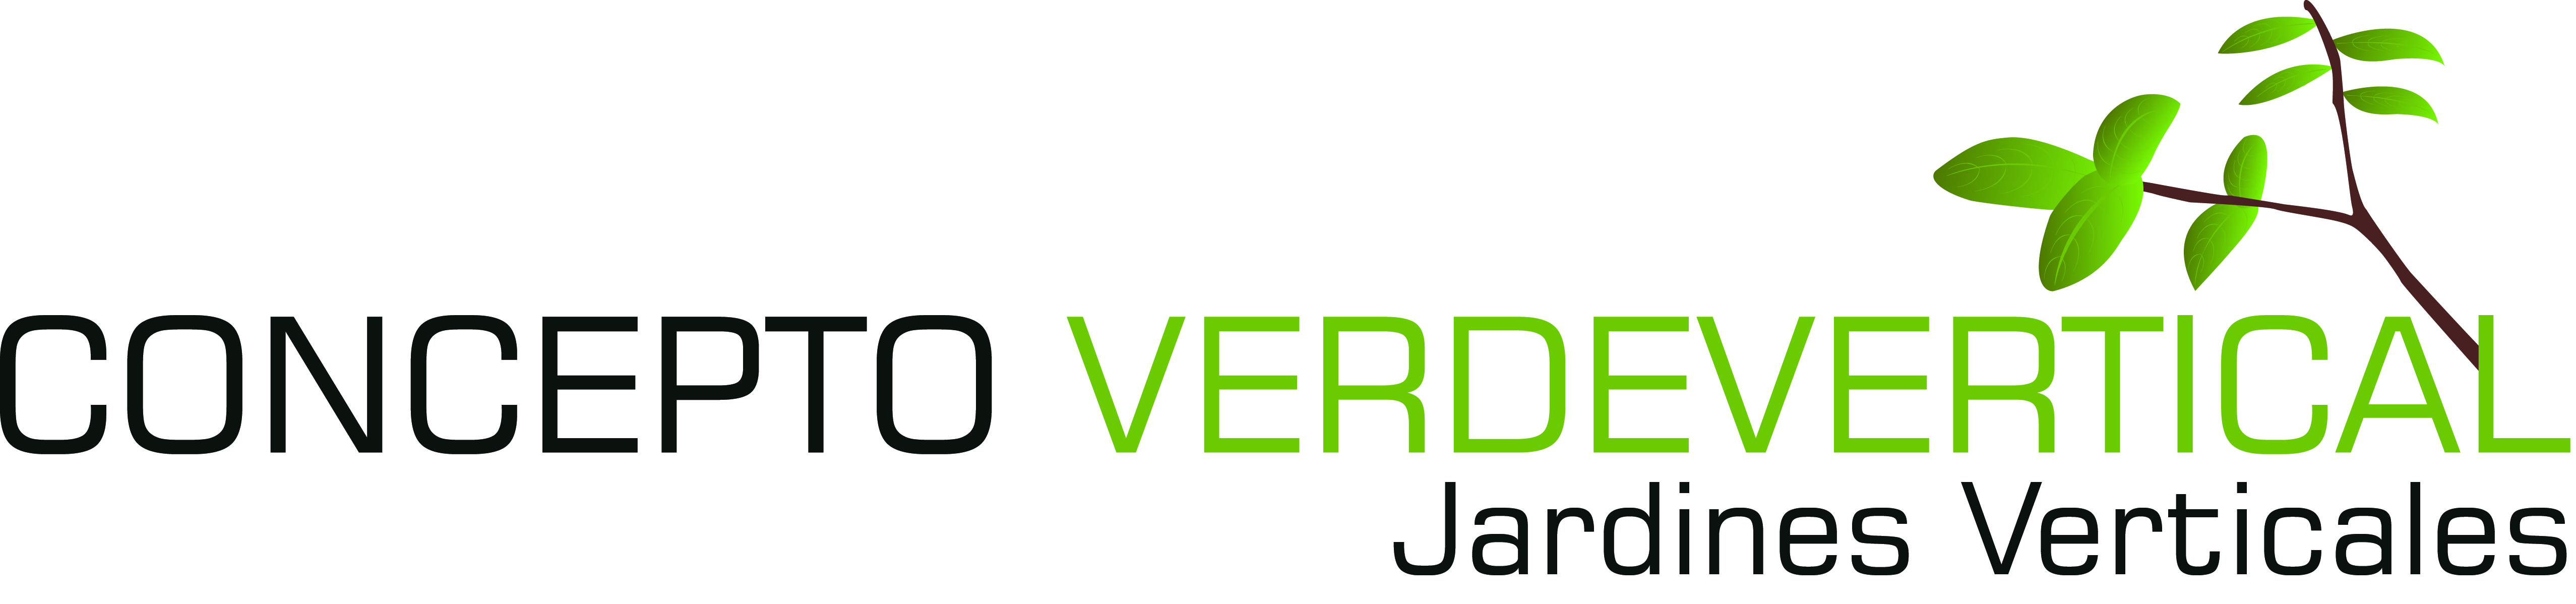 Concepto Verdevertical logo